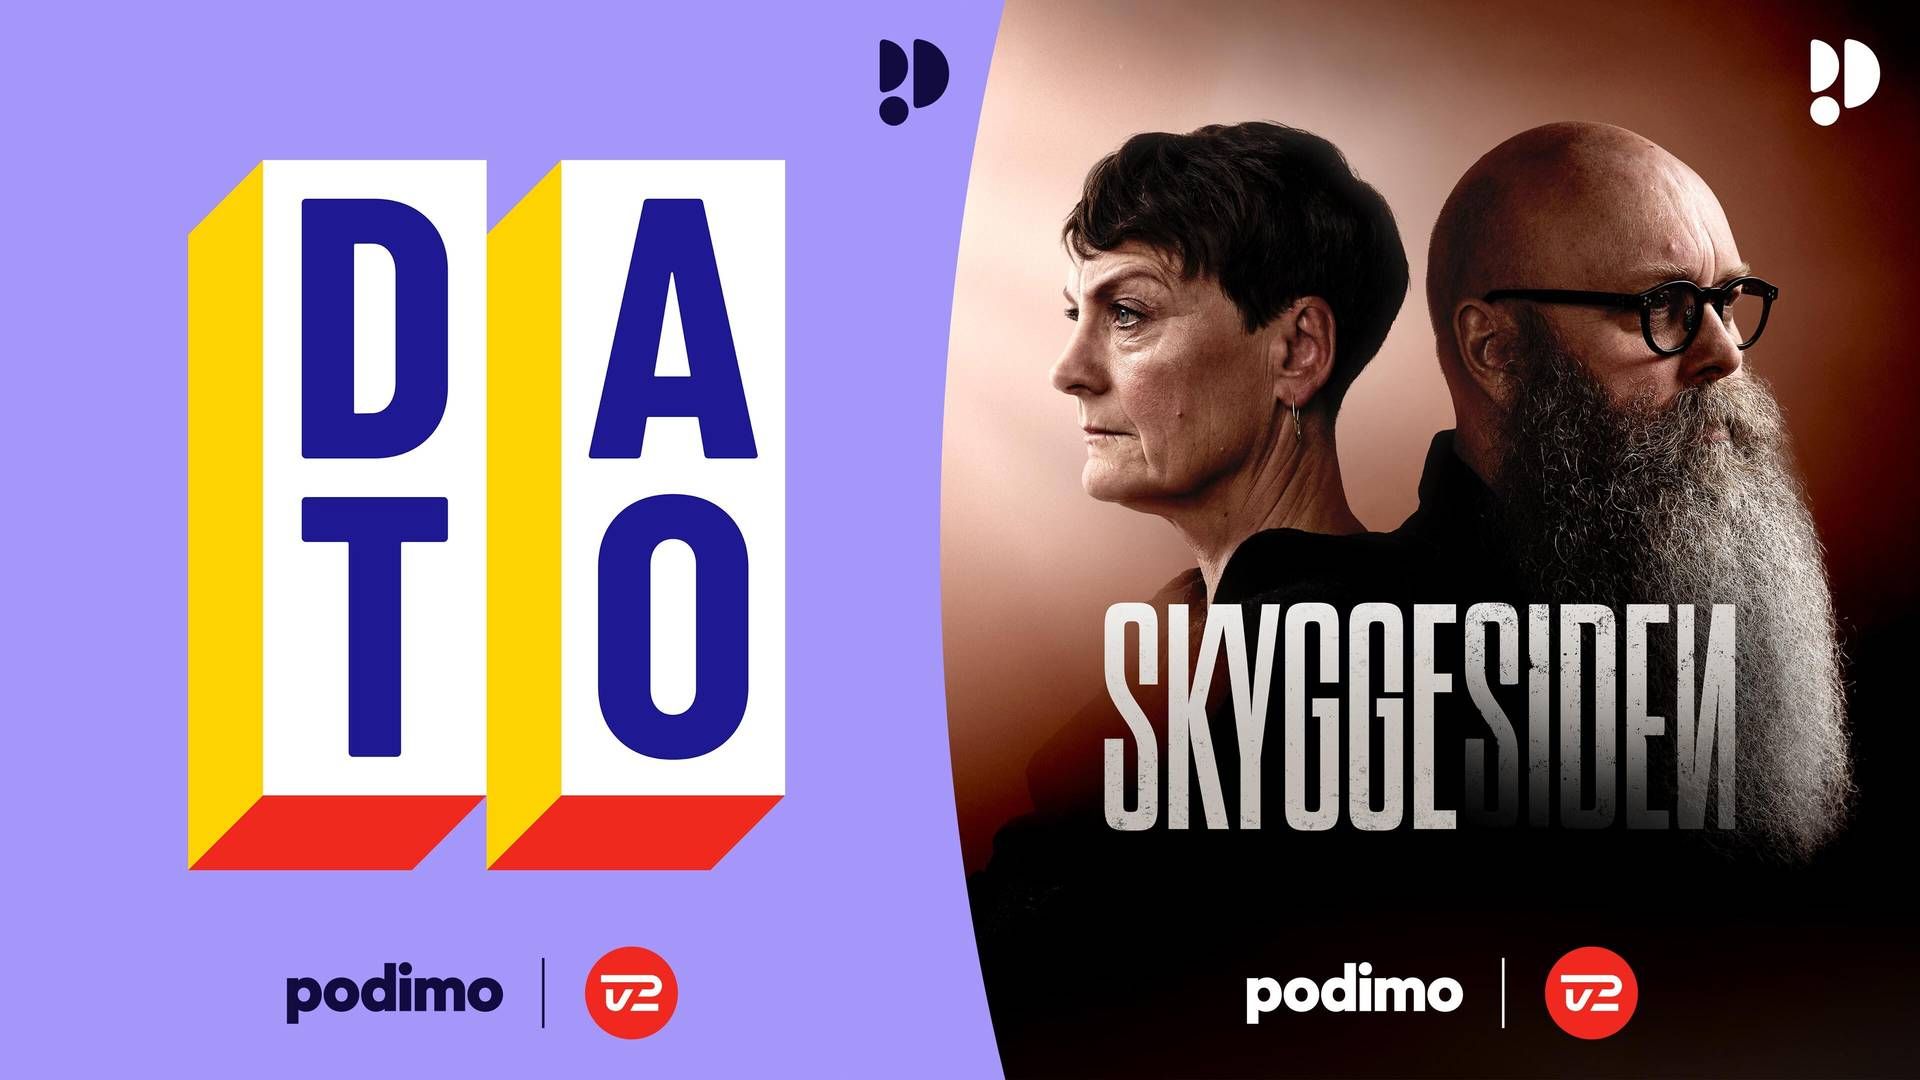 De to TV 2-podcasts ”Dato” og ”Skyggesiden” vil udkomme på Podimo. | Foto: Henrik Ohsten/Podimo/TV2